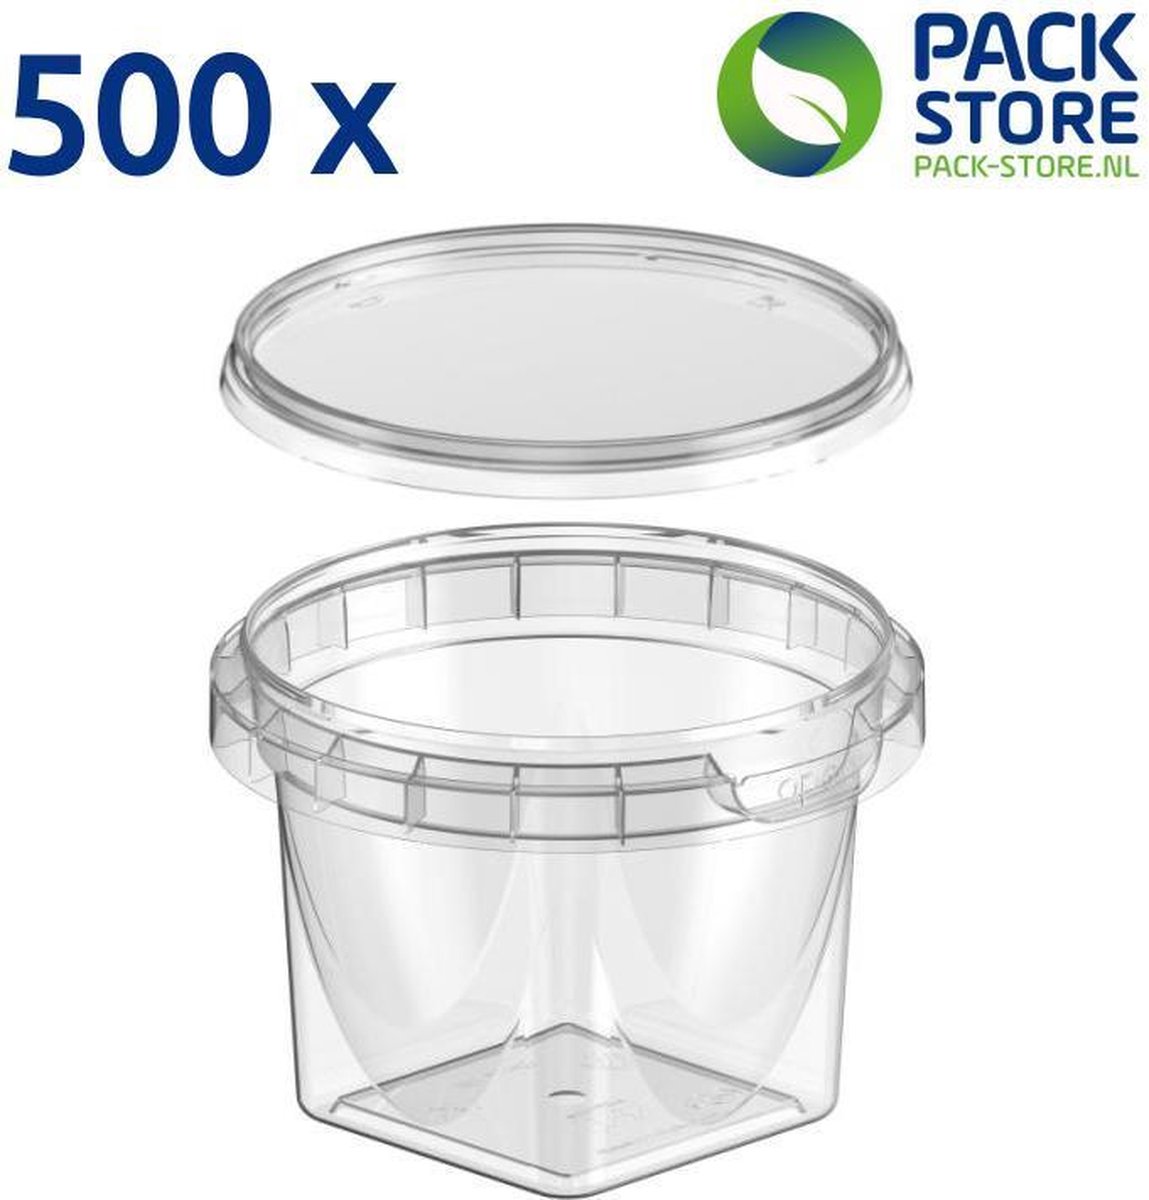 500 x plastic bakjes met deksel - 240 ml - ø95mm - vershoudbakjes - meal-prep bakjes - transparant, geschikt voor diepvries, magnetron en vaatwasser - Nederlandse producent